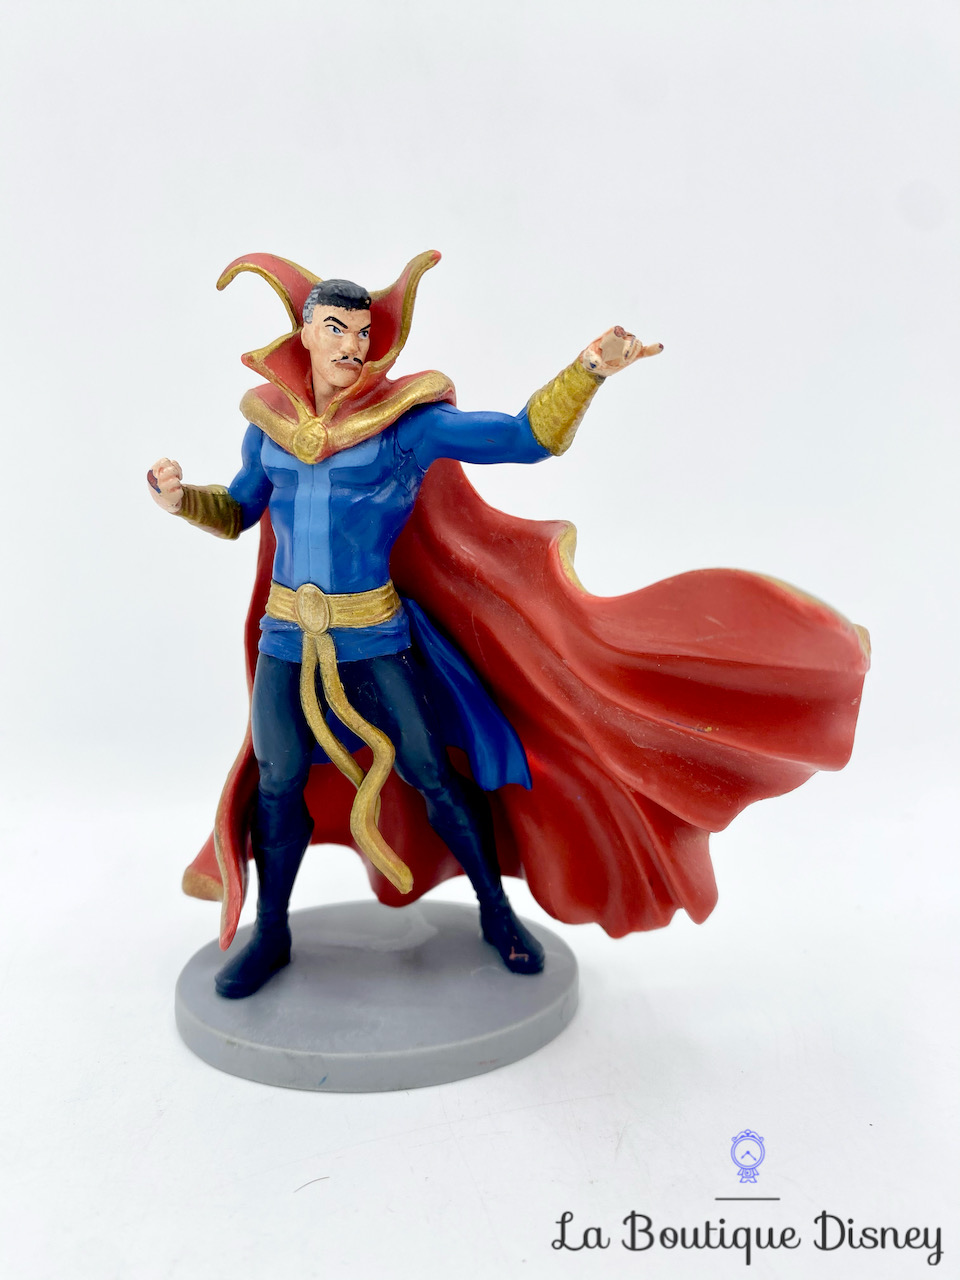 Figurine-Doctor-Strange-Avengers-Marvel-Disney-Store-Playset-10-cm